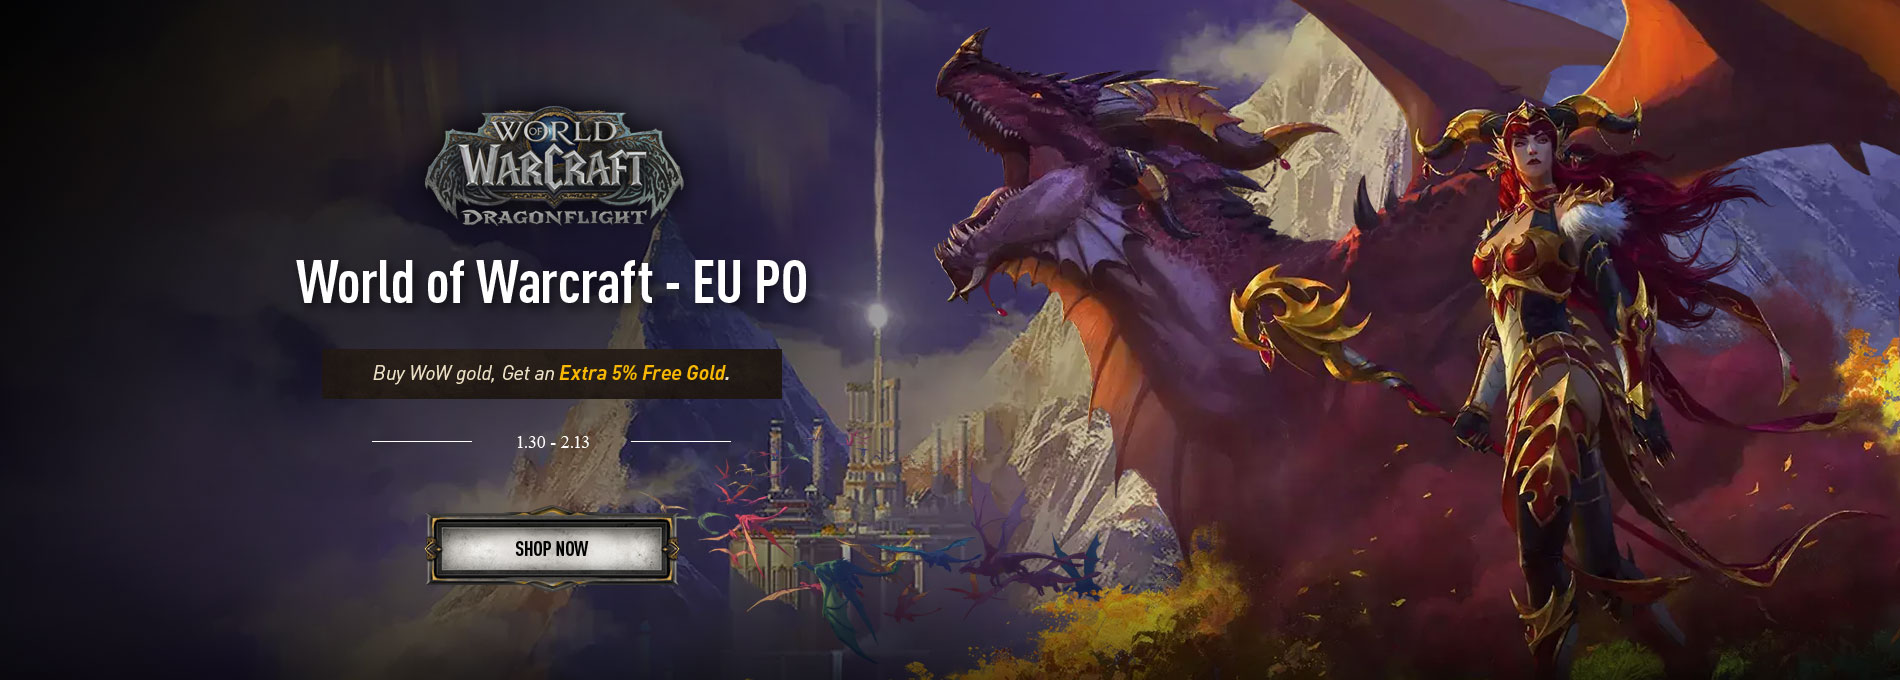 World of Warcraft-EU-5%gold